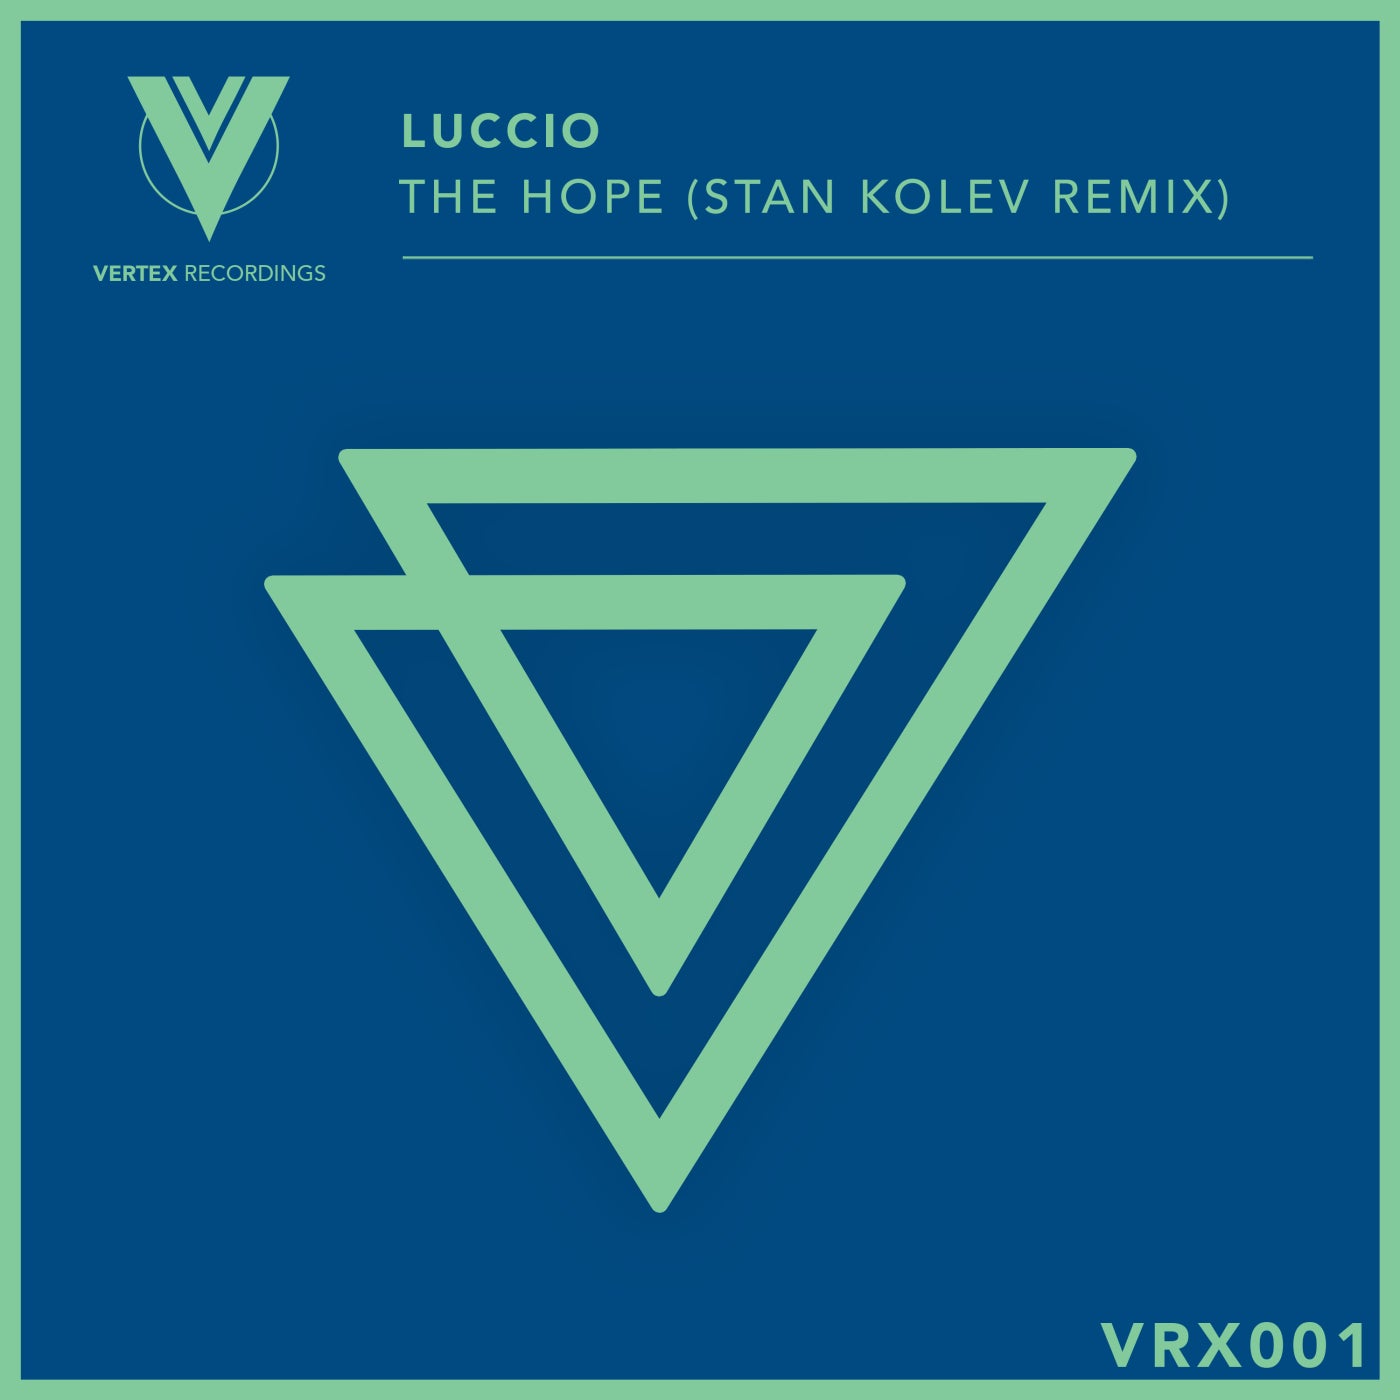 Luccio - The Hope (Stan Kolev Remix) [VRX001]